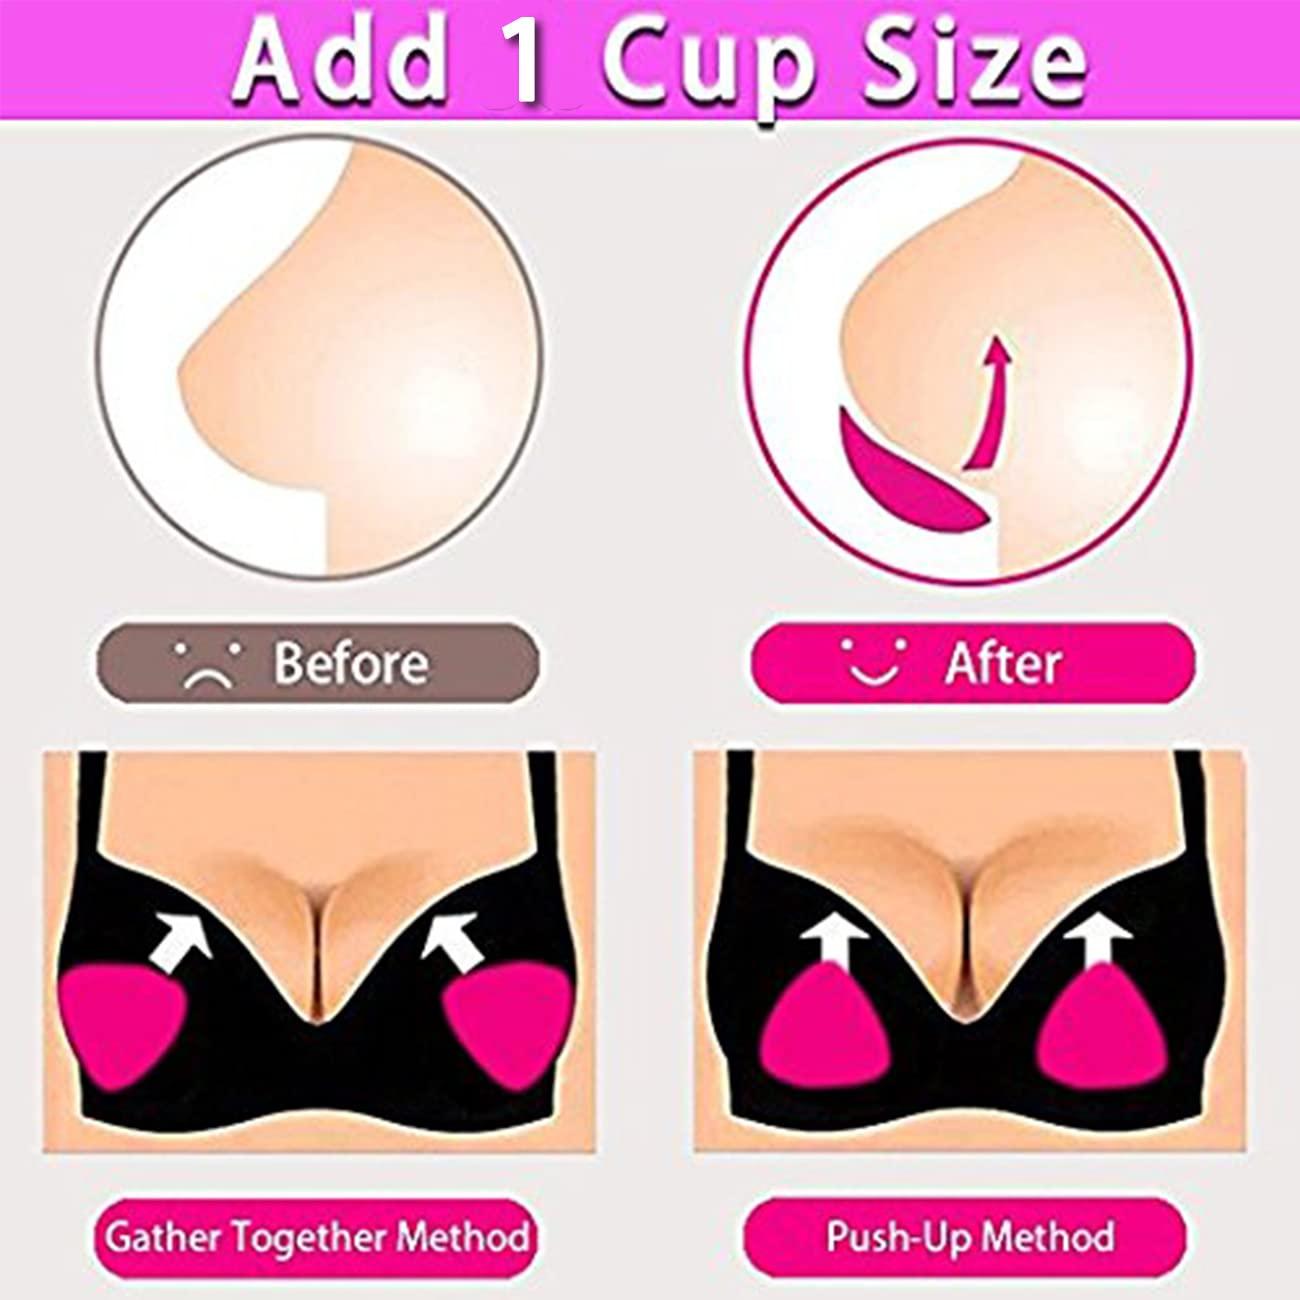 Silicone Breast Surgery Bras, Silicone Breast Underwear